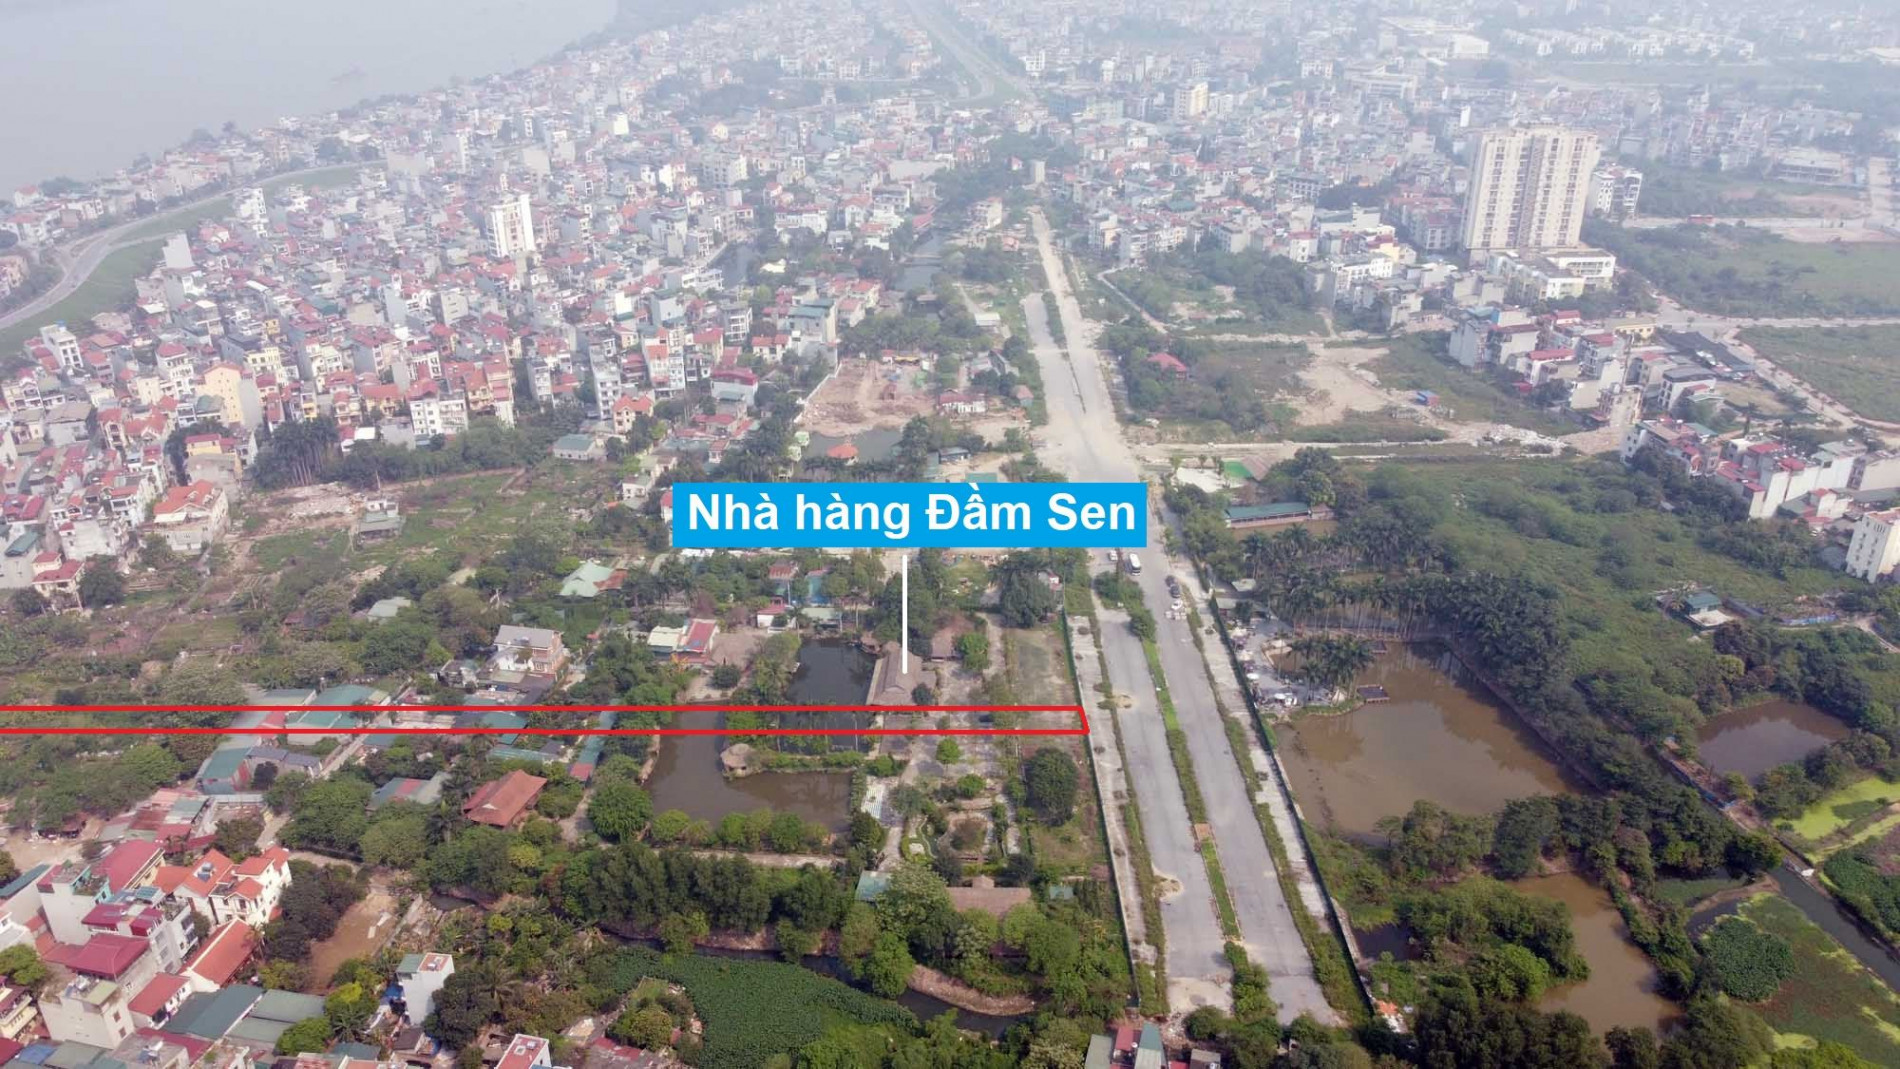 Đường sẽ mở theo quy hoạch ở phường Ngọc Thụy, Long Biên, Hà Nội (phần 7)